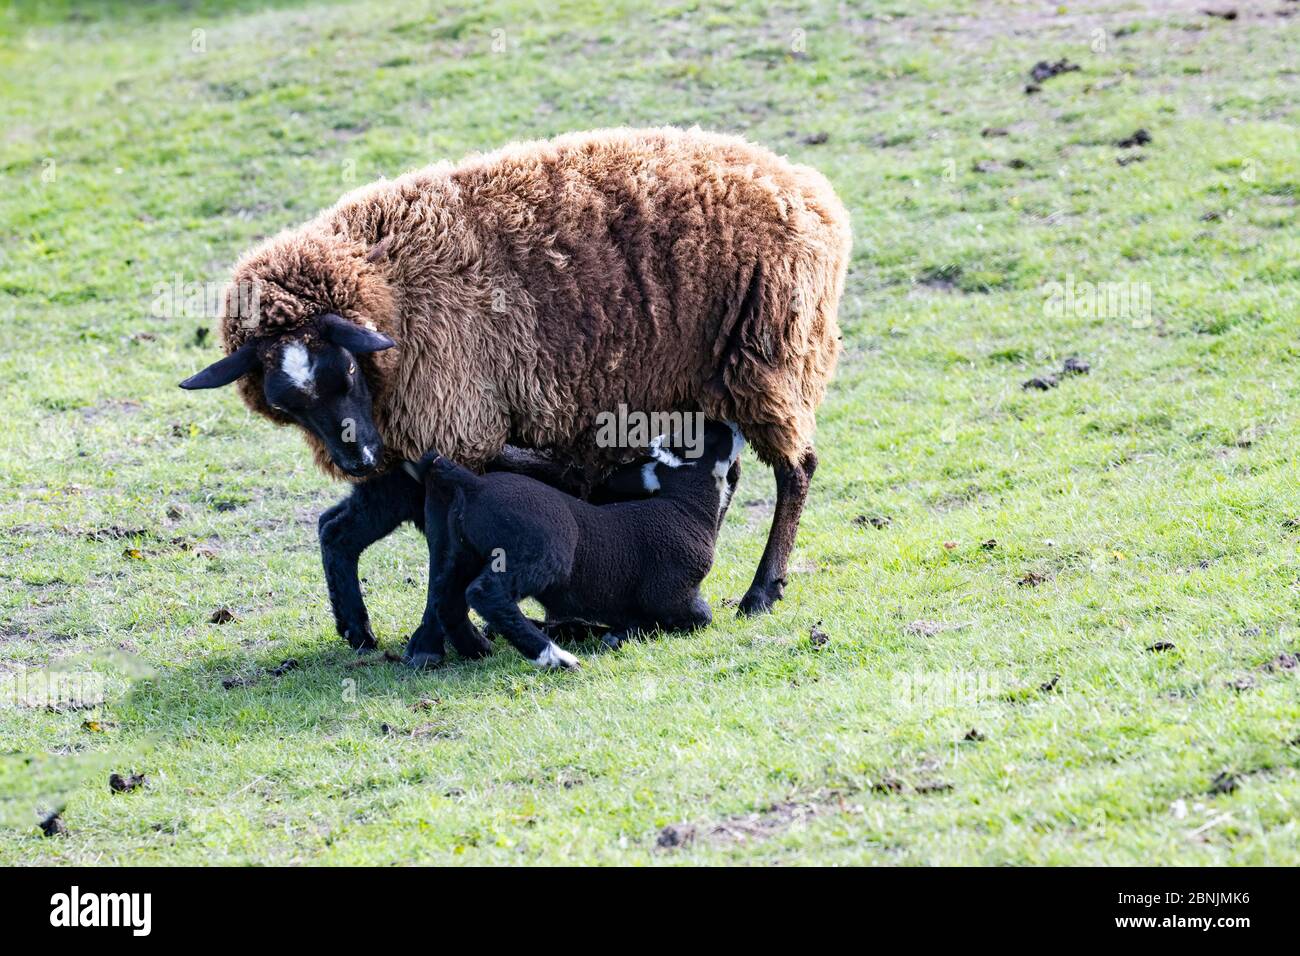 Schwarz konfrontiert weibliche Schafe oder Ewe Ovis widder Fütterung zwei junge schwarze Frühlingslämmer an ihren Zitzen säugen Stockfoto